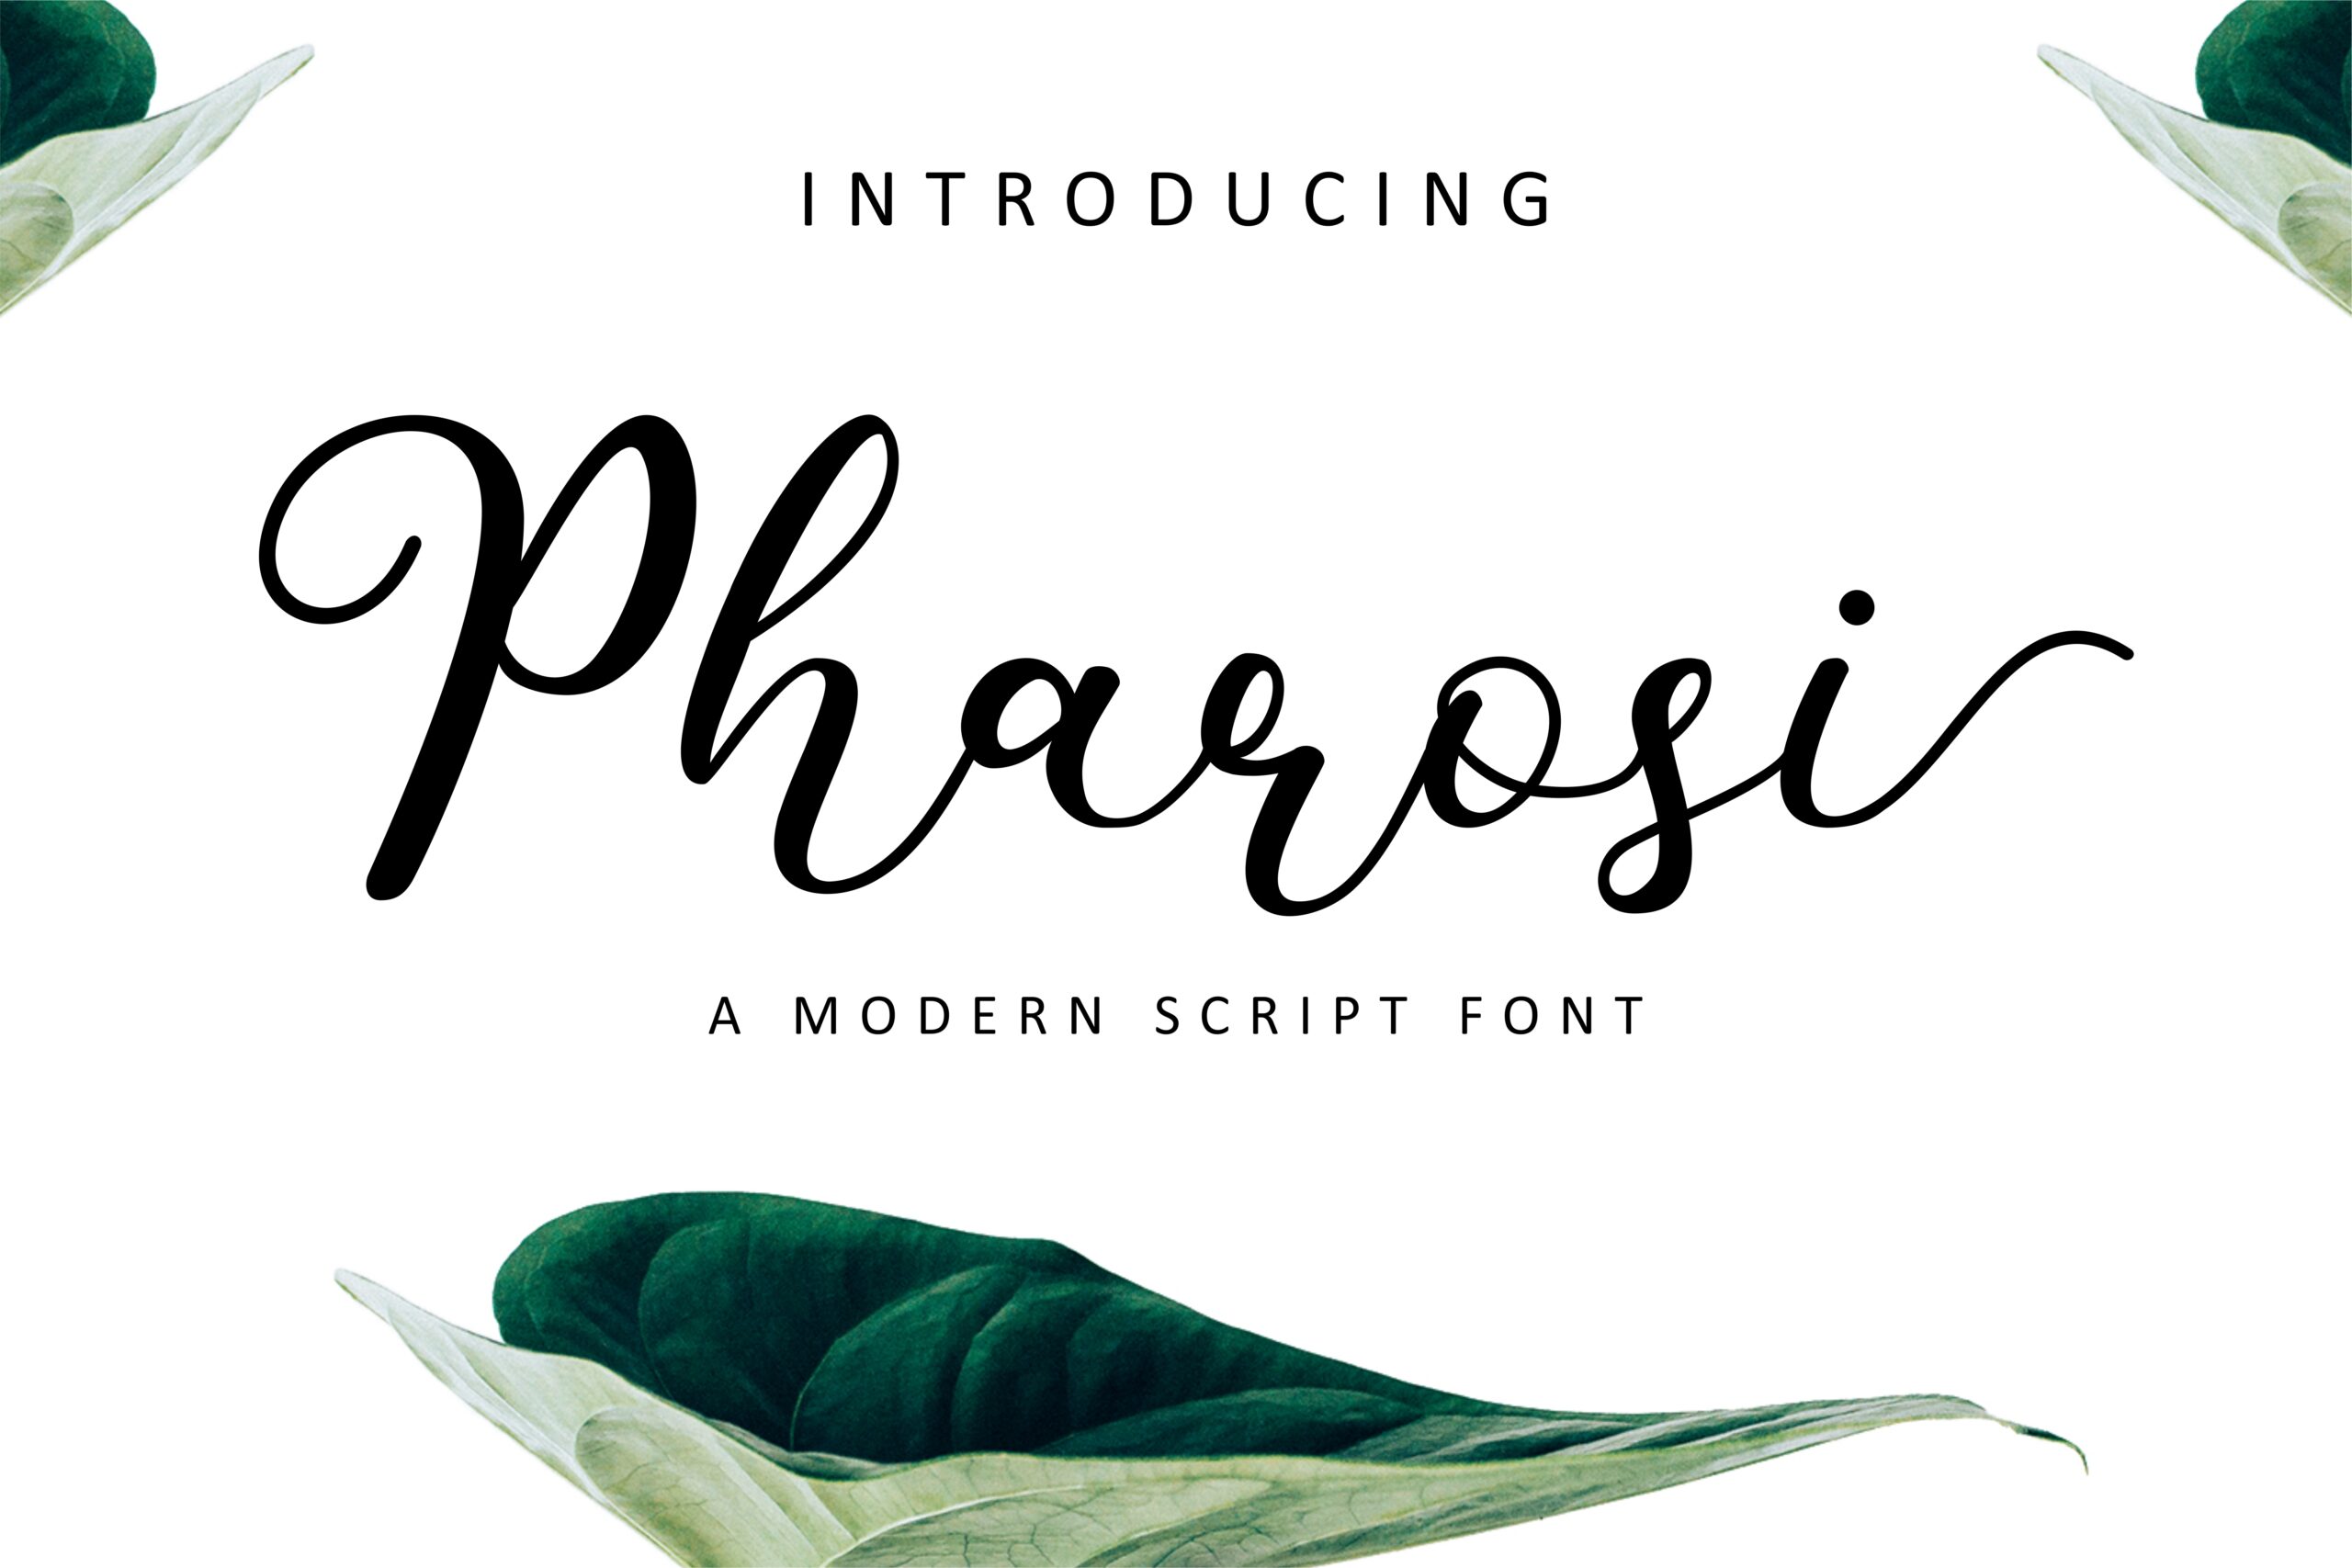 Pharosi Font